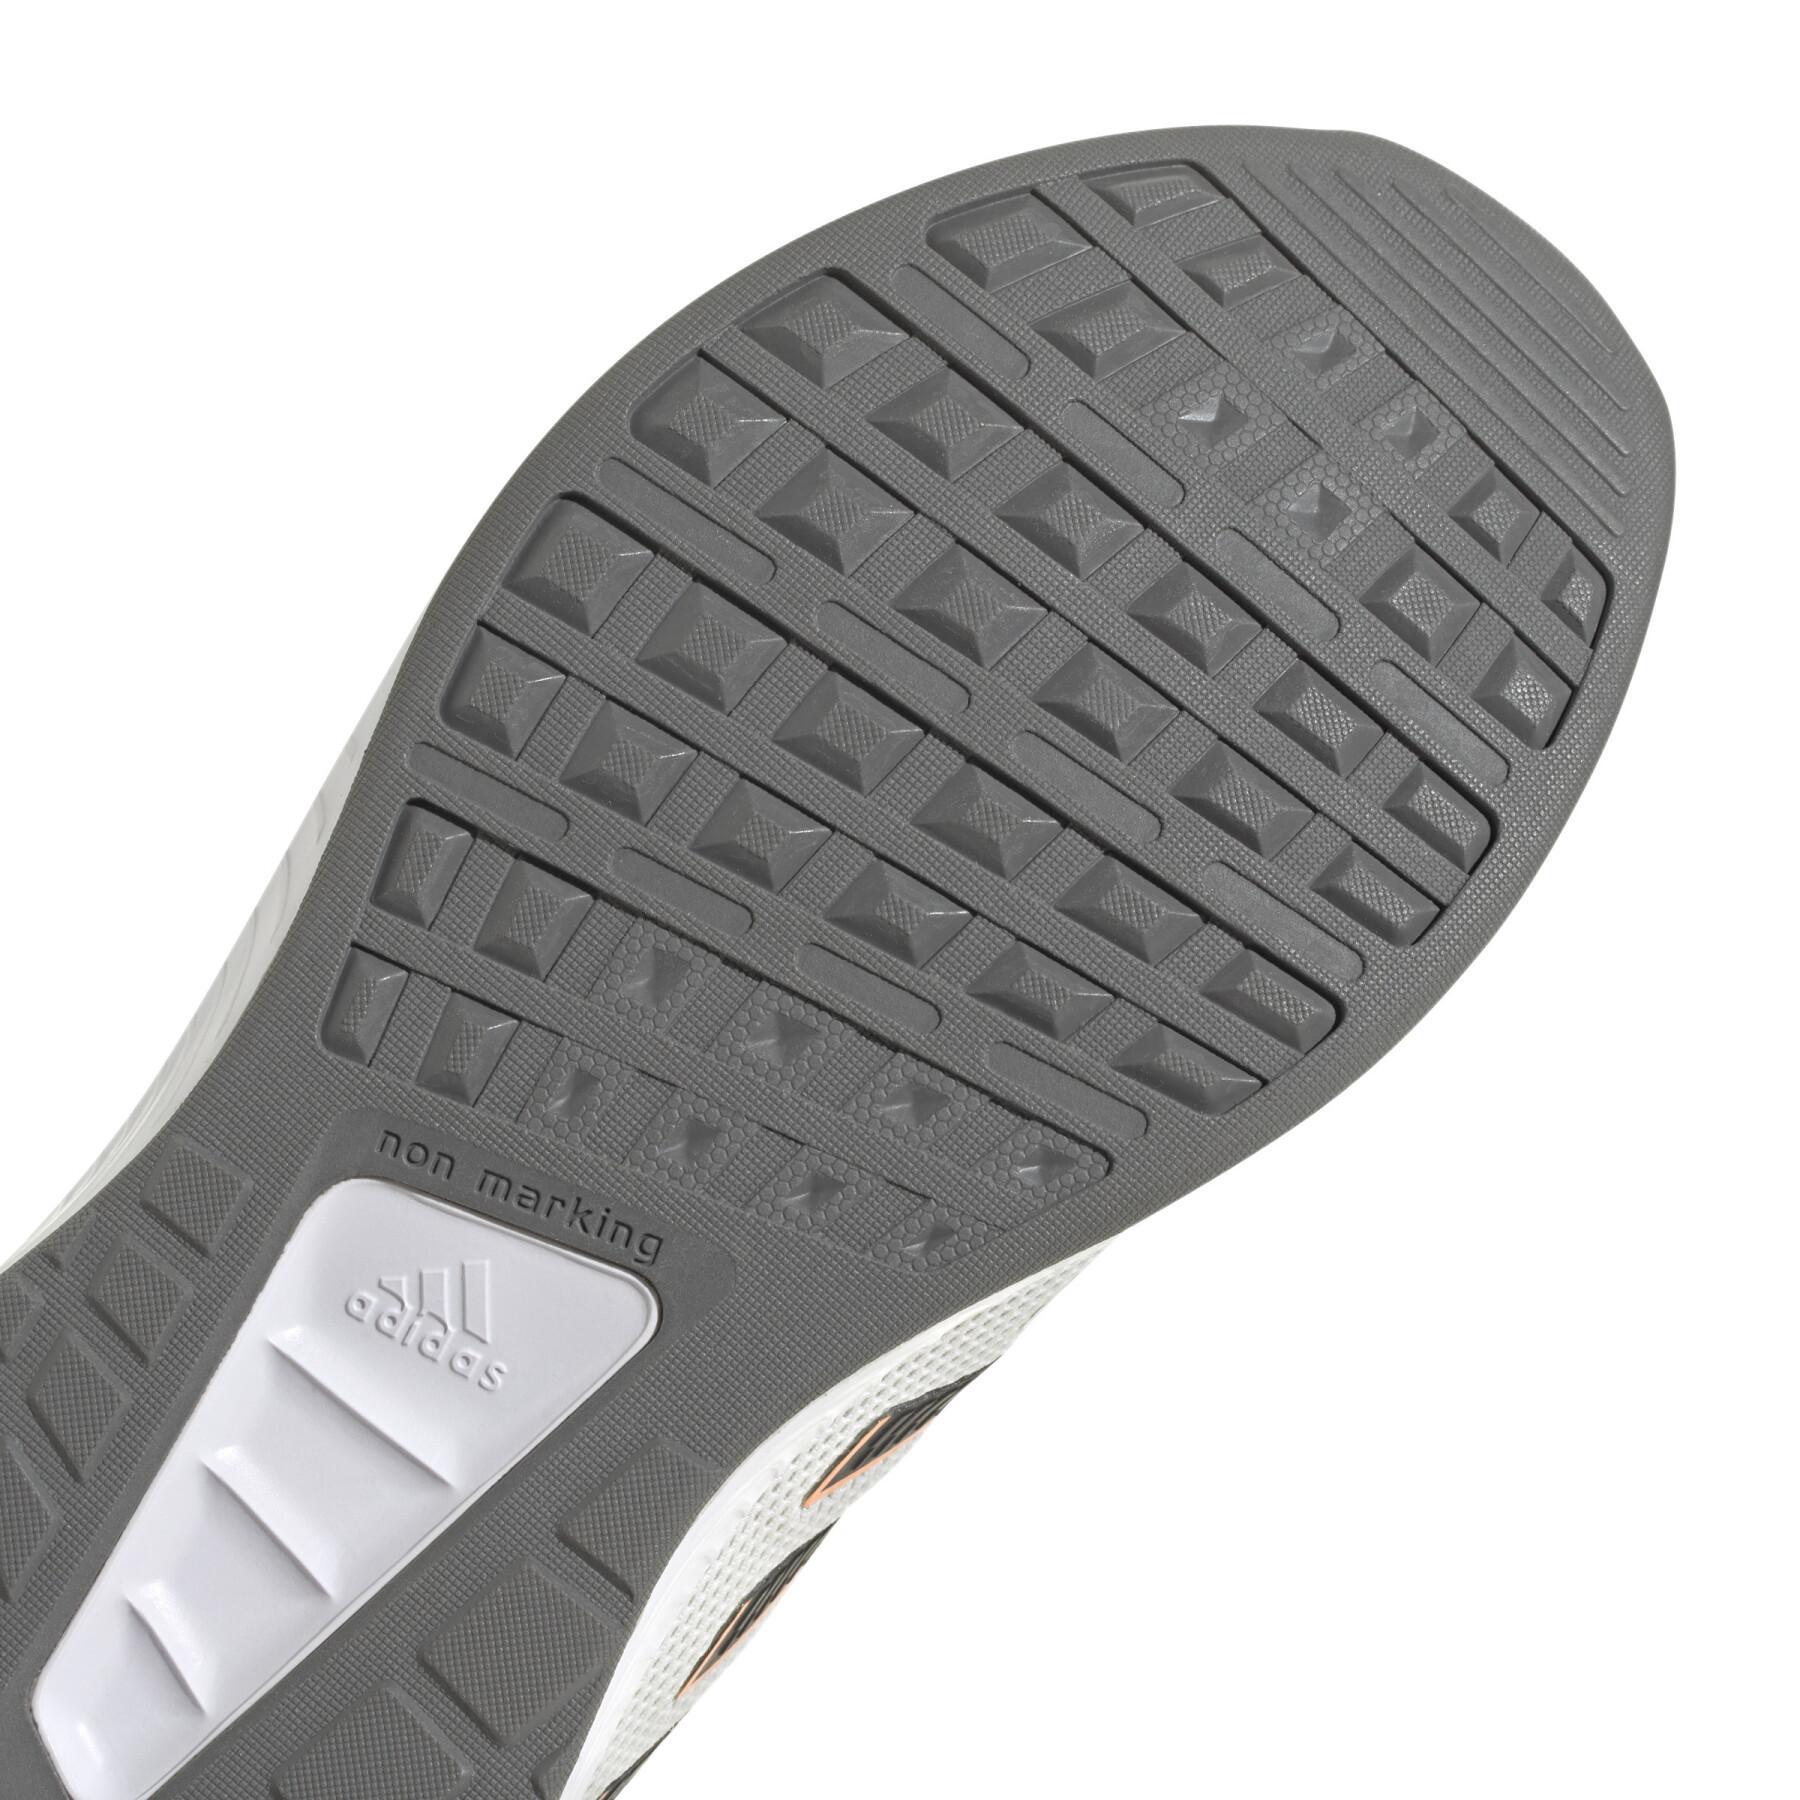 Women's running shoes adidas Falcon 2.0